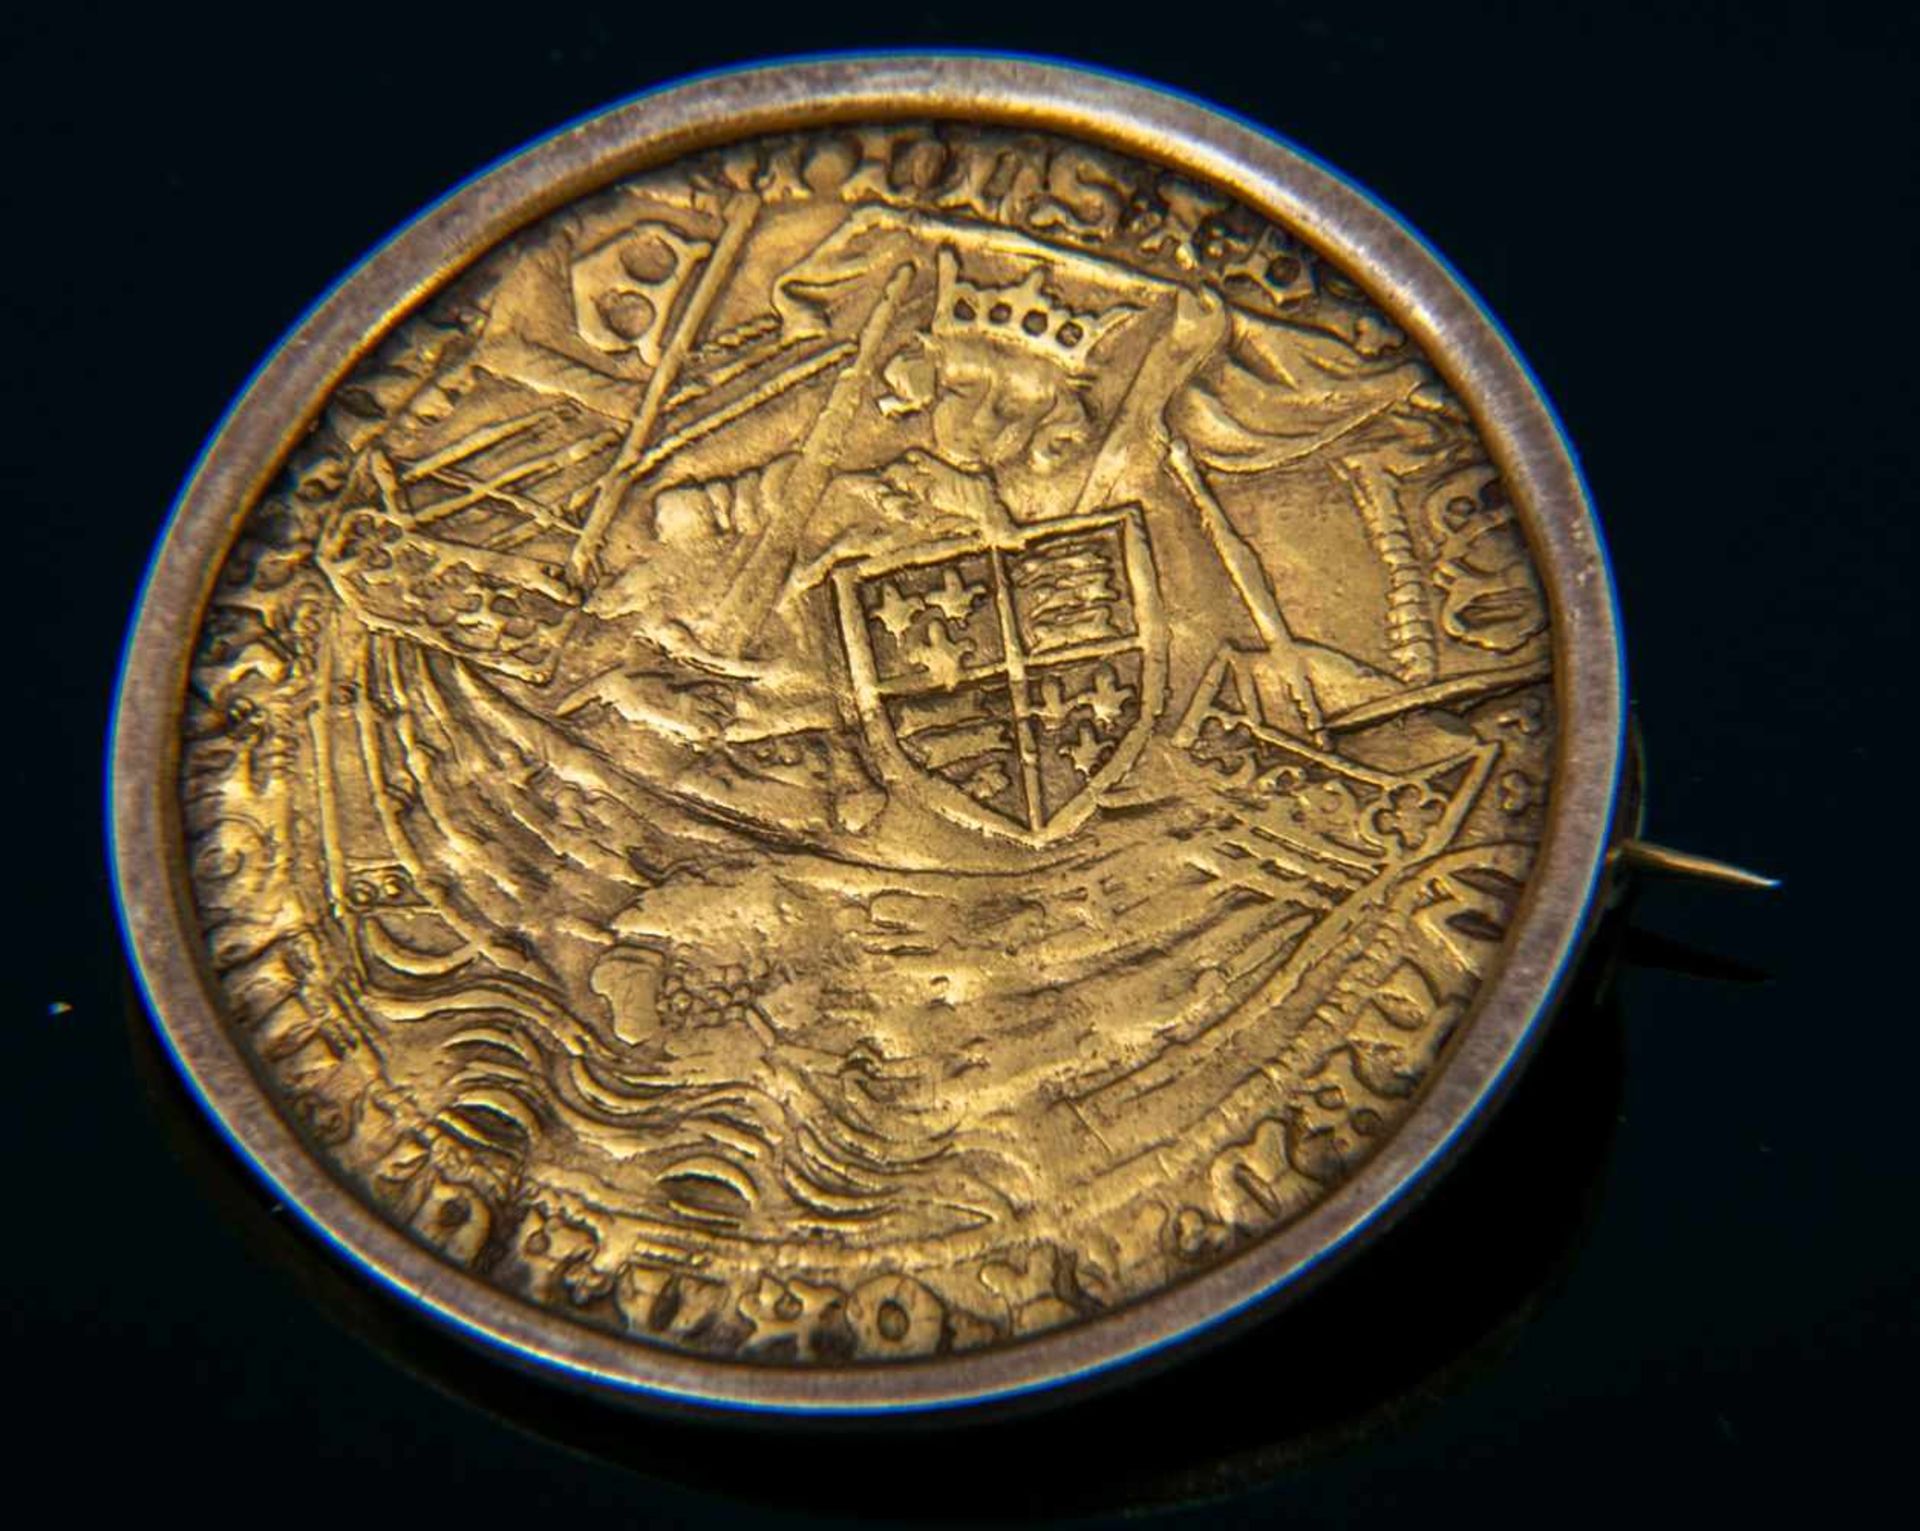 GOLD RYAL / ROSE NOBLE - Goldmünze. England 15. - 17. Jhd., vorderseitig König mit Schwert, Schild & - Bild 7 aus 15